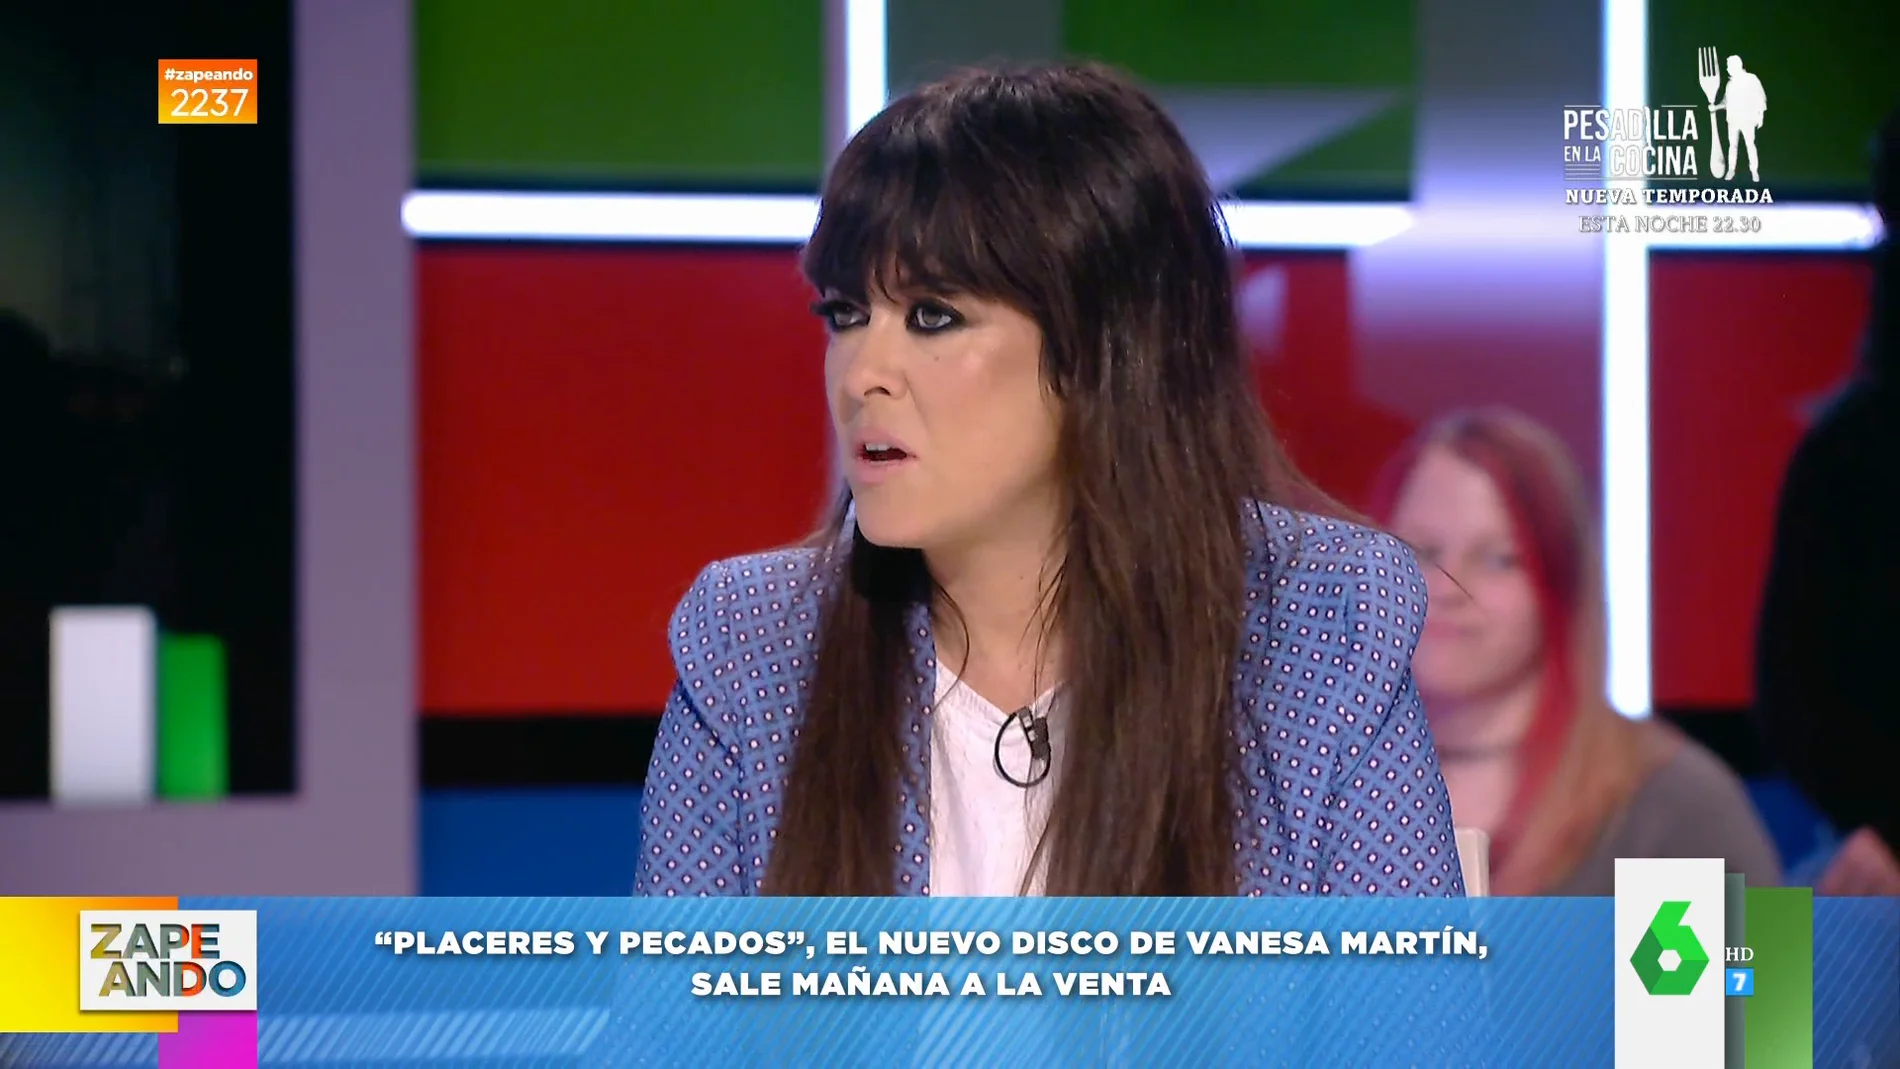 La confesión de Vanesa Martín en Zapeando que 'decepciona' a Dani Mateo: "No me digas eso" 